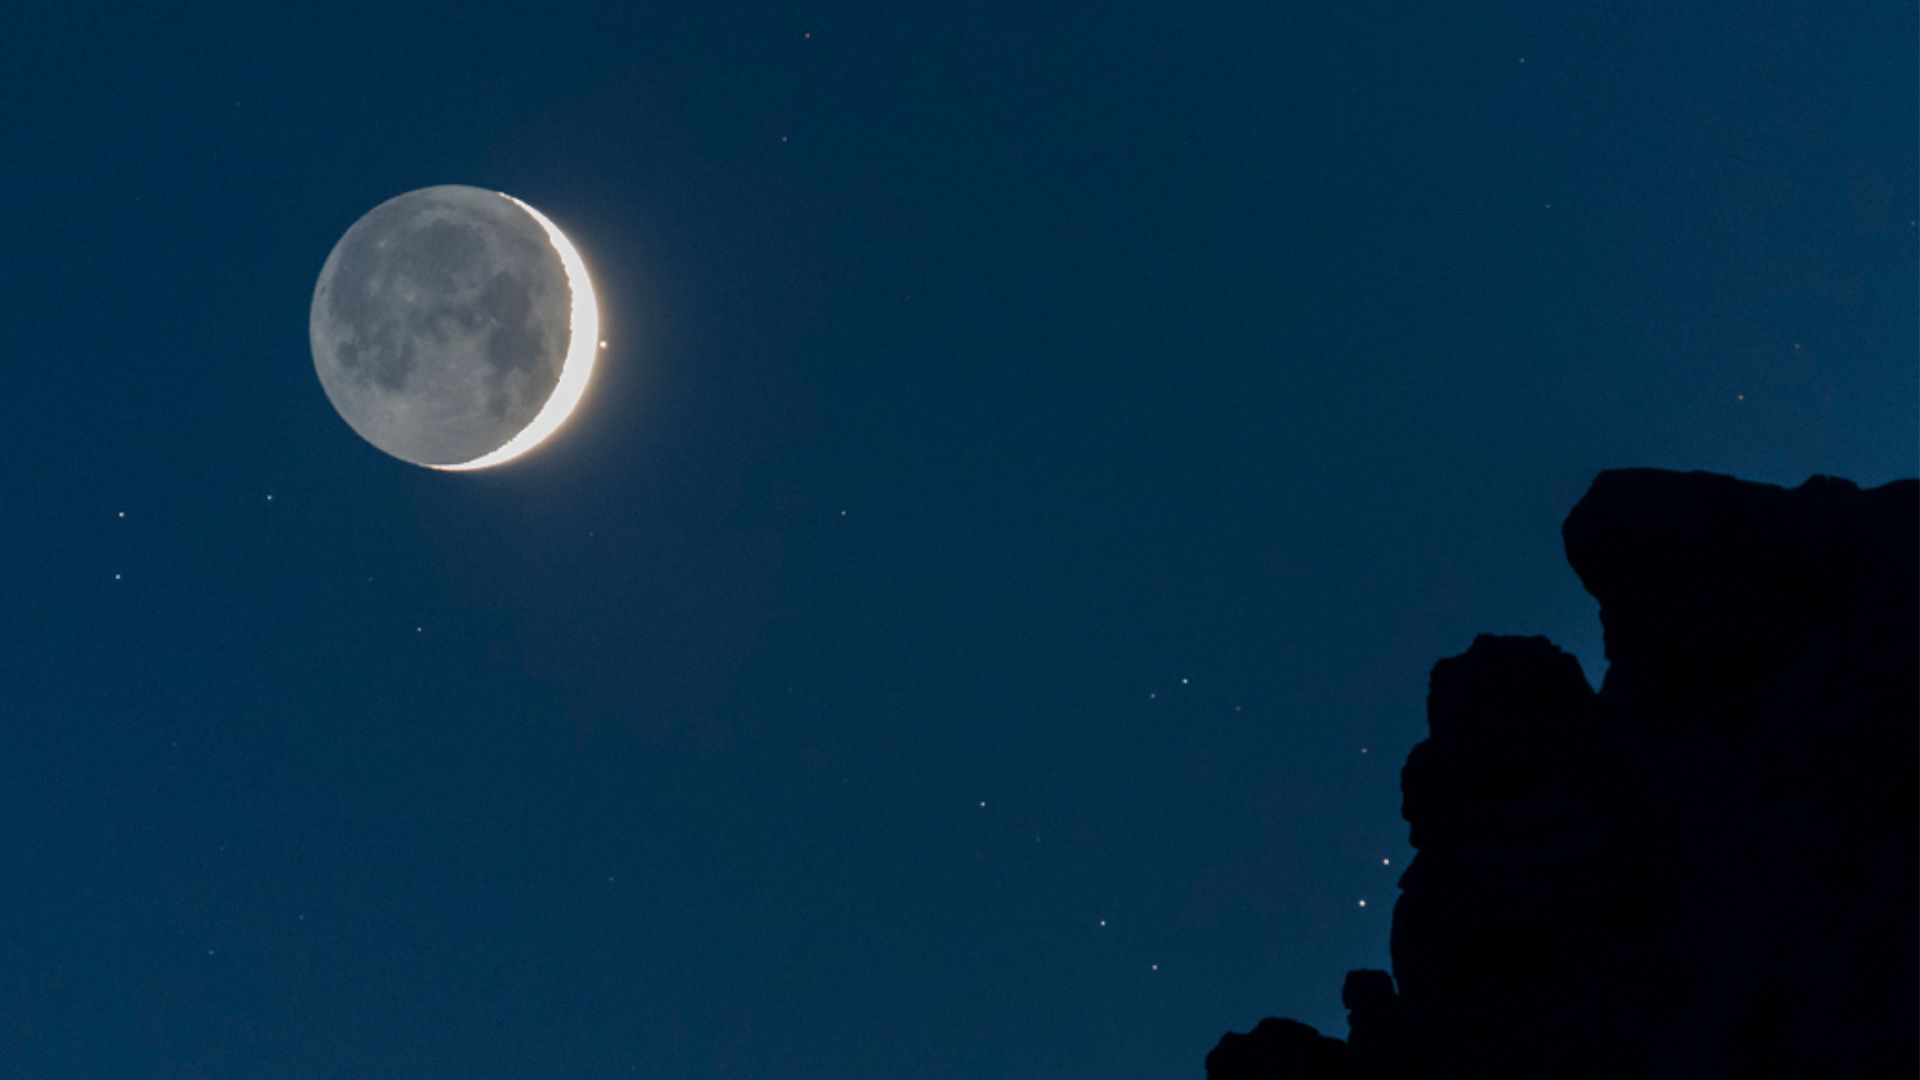 Aldebaran, o olho bovino da Constelação de Touro, e uma jovem Lua Nova compartilharam o céu, no início da noite. O adorável emparelhamento celestial pôde ser apreciado em todo o planeta Terra, mas em alguns locais a Lua chegou até a passar na frente de Aldebaran, em uma dramática ocultação. Registrada em 28 de abril de 2017, esta paisagem celeste captura Aldebaran logo depois de ela emergir por trás do brilhante disco lunar. Em primeiro plano, estão os picos das montanhas Dolomitas, perto de Laggio di Cadore, na Itália